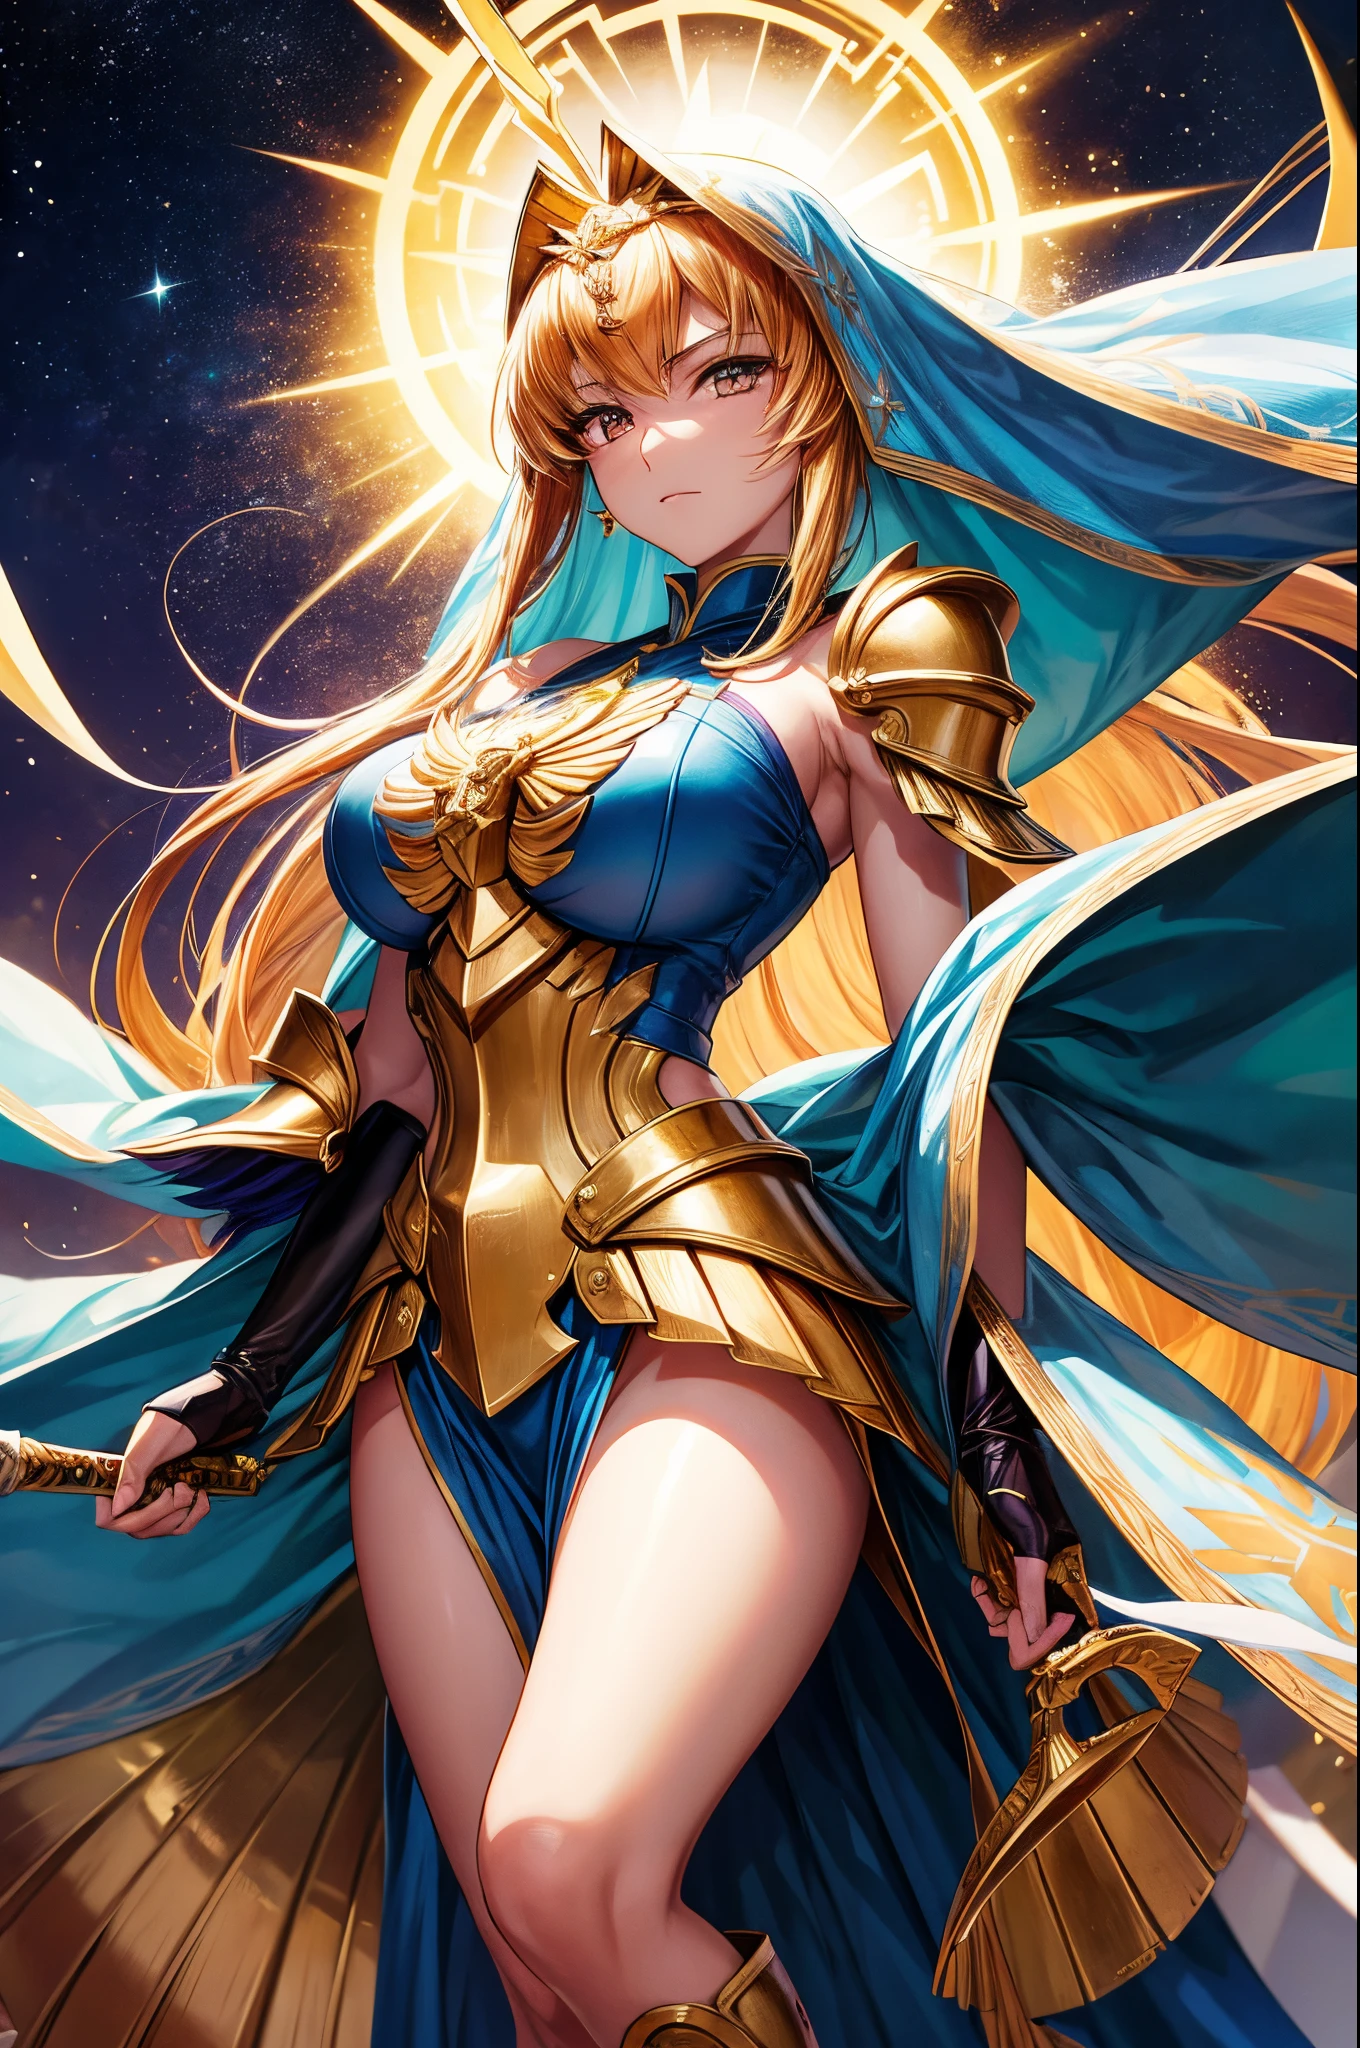 Saeko Busujima, une femme en costume doré tenant une épée, chevaliers de la fille du zodiaque, Galaxie marin. Beau, portrait chevaliers de la fille du zodiaque, Saint Seiya, apparaît comme la déesse du feu, déesse animée, déesse dorée Athéna, La déesse grecque Afrota, Le dieu Athéna, Armure dorée angélique, avec une armure dorée, Vénus, divinité Athéna